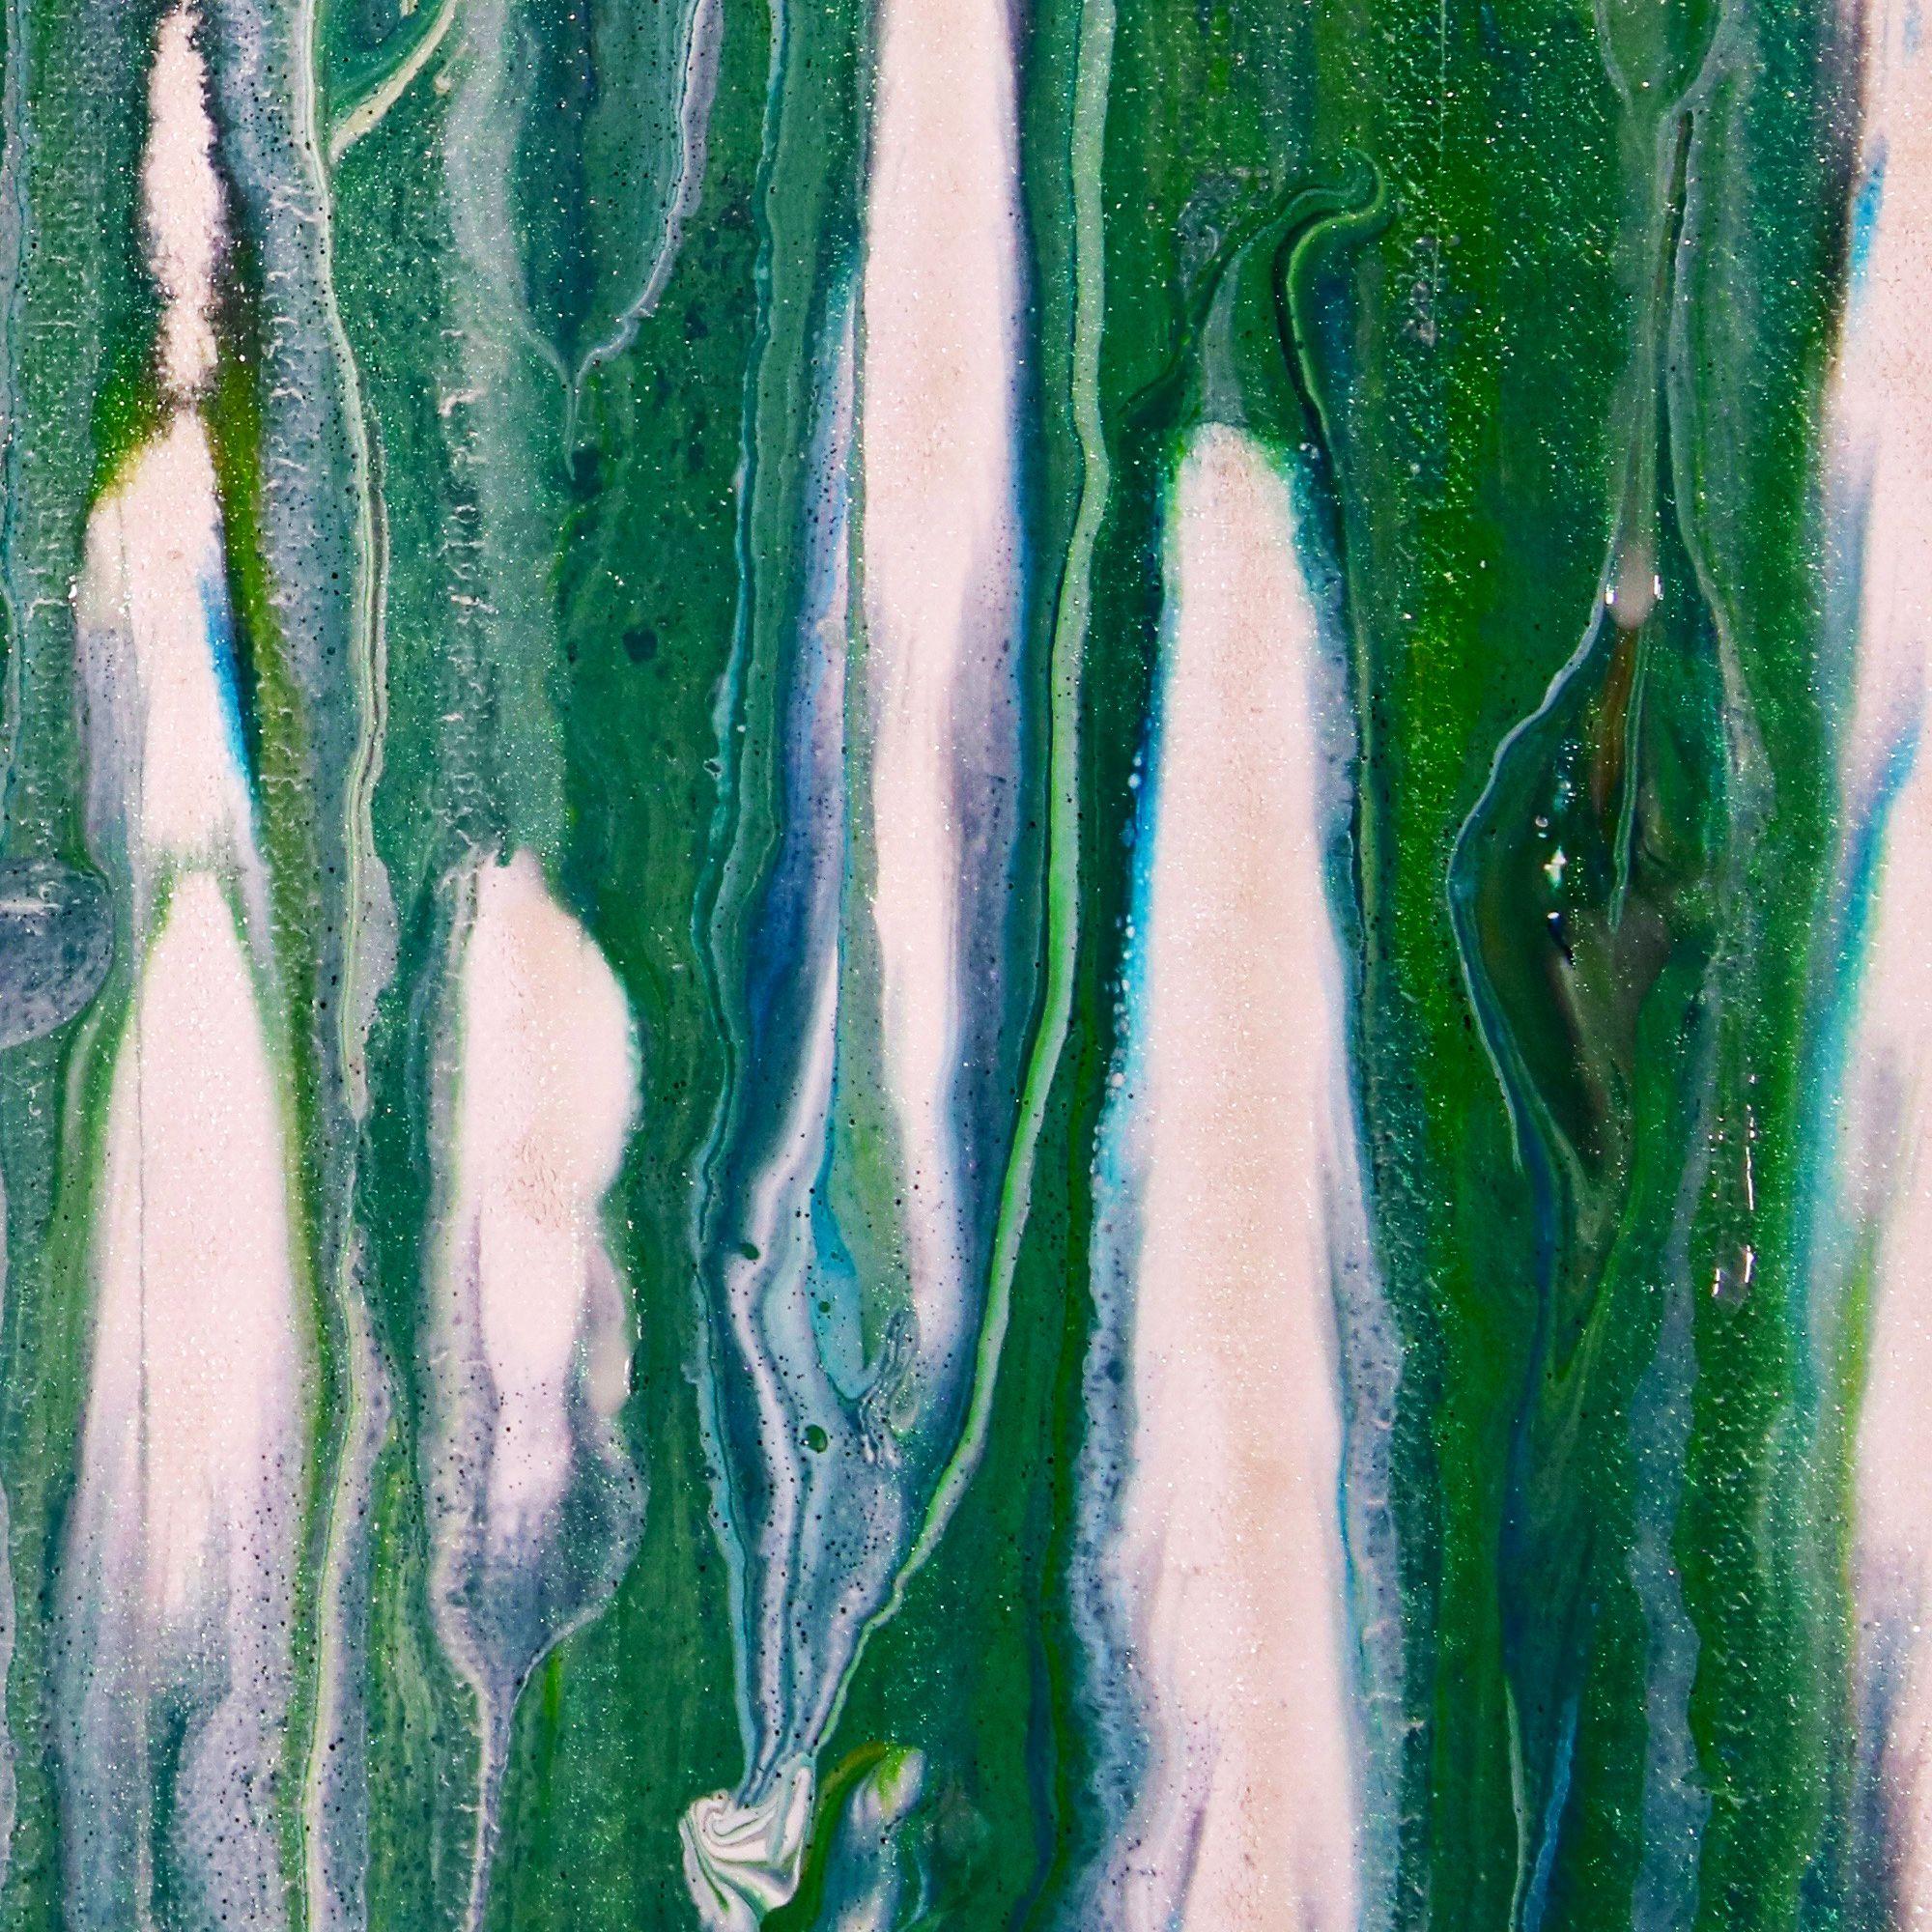 Un regard plus attentif - Forêt chatoyante, peinture, acrylique sur toile - Abstrait Painting par Nestor Toro